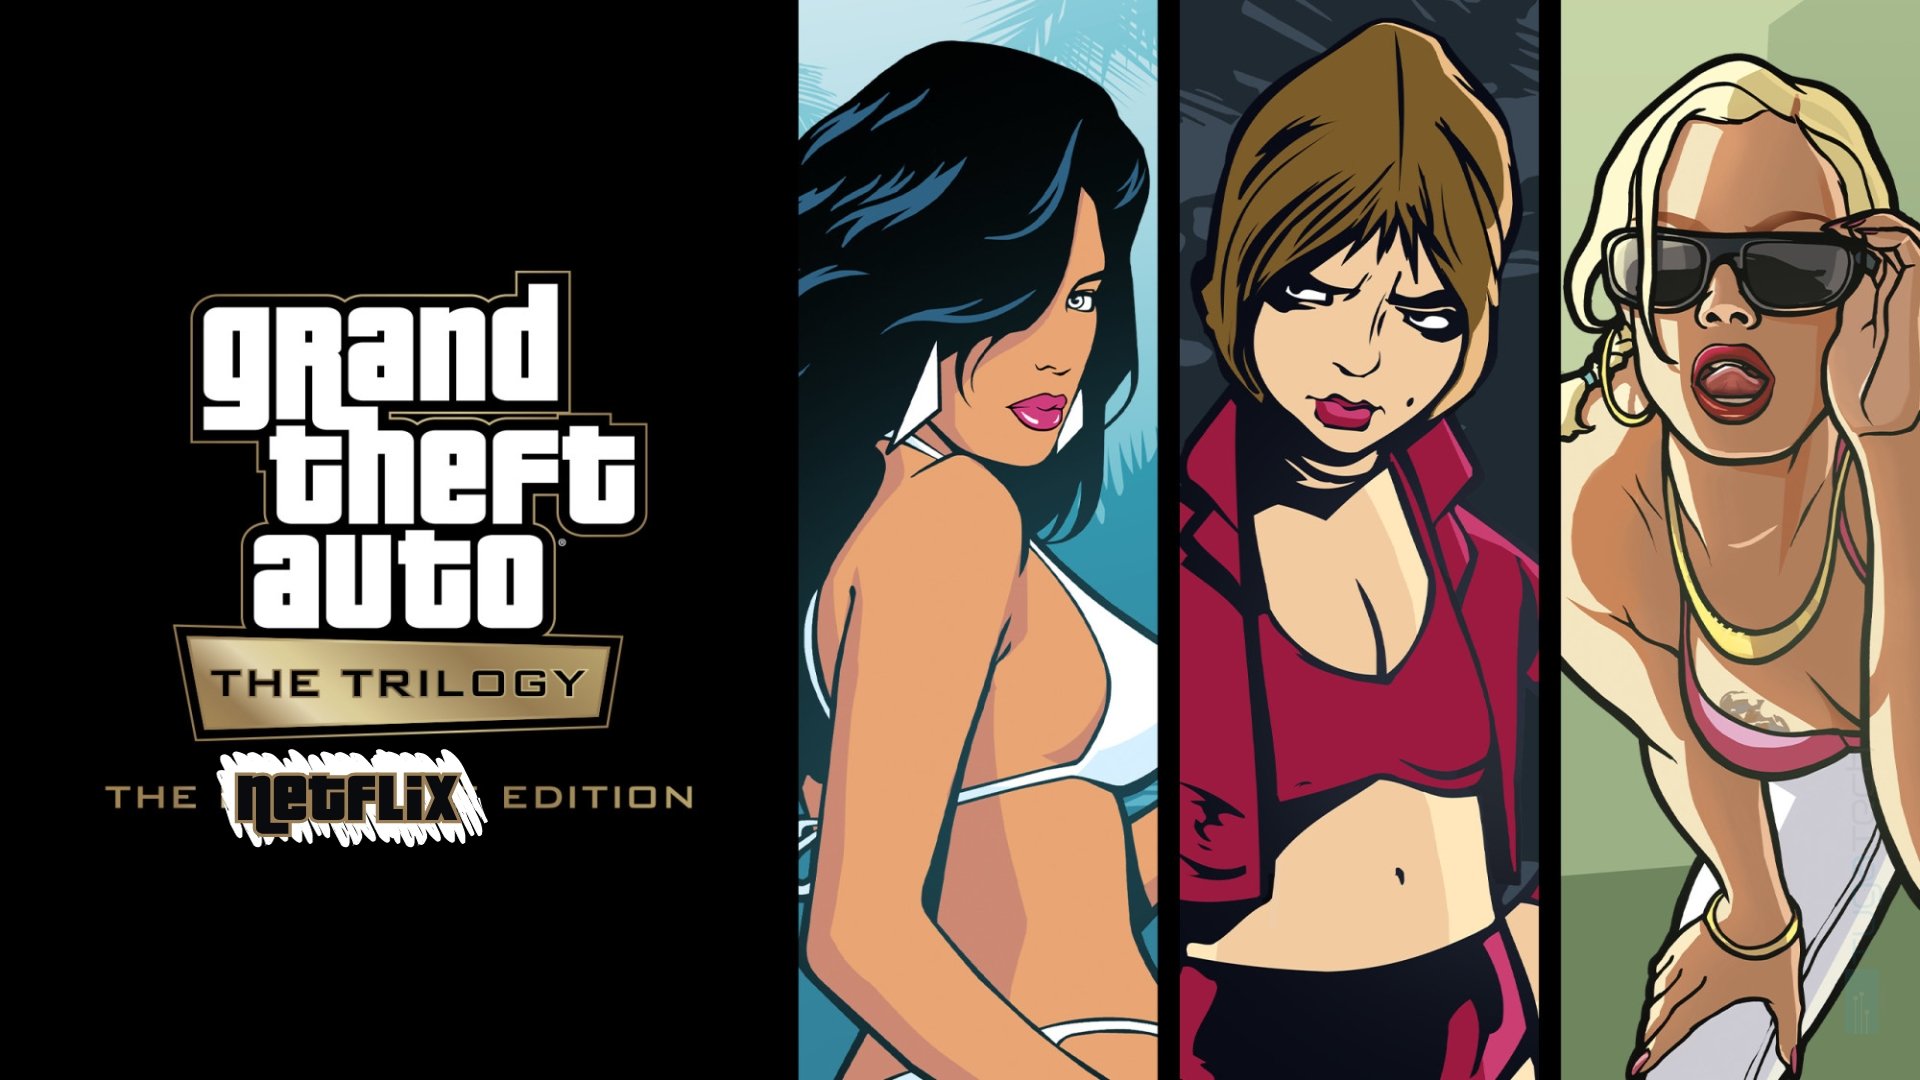 Grand Theft Auto Trilogy – Definitive Edition chega a dispositivos móveis pela Netflix